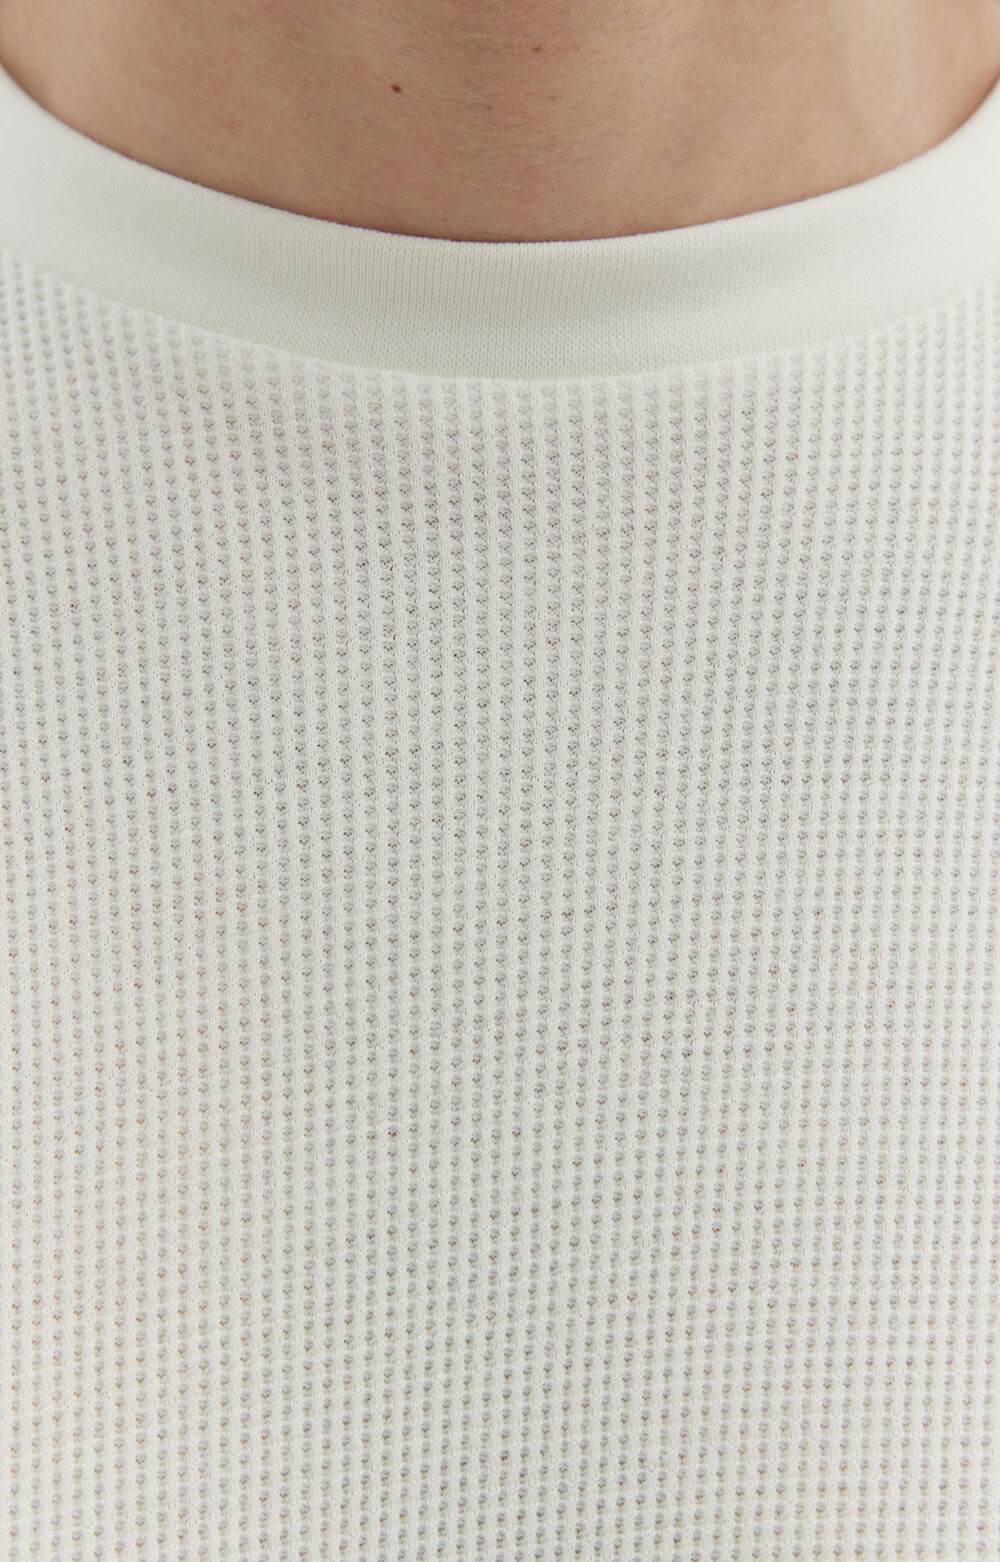 Luźny t-shirt z bawełny organicznej o waflowym splocie